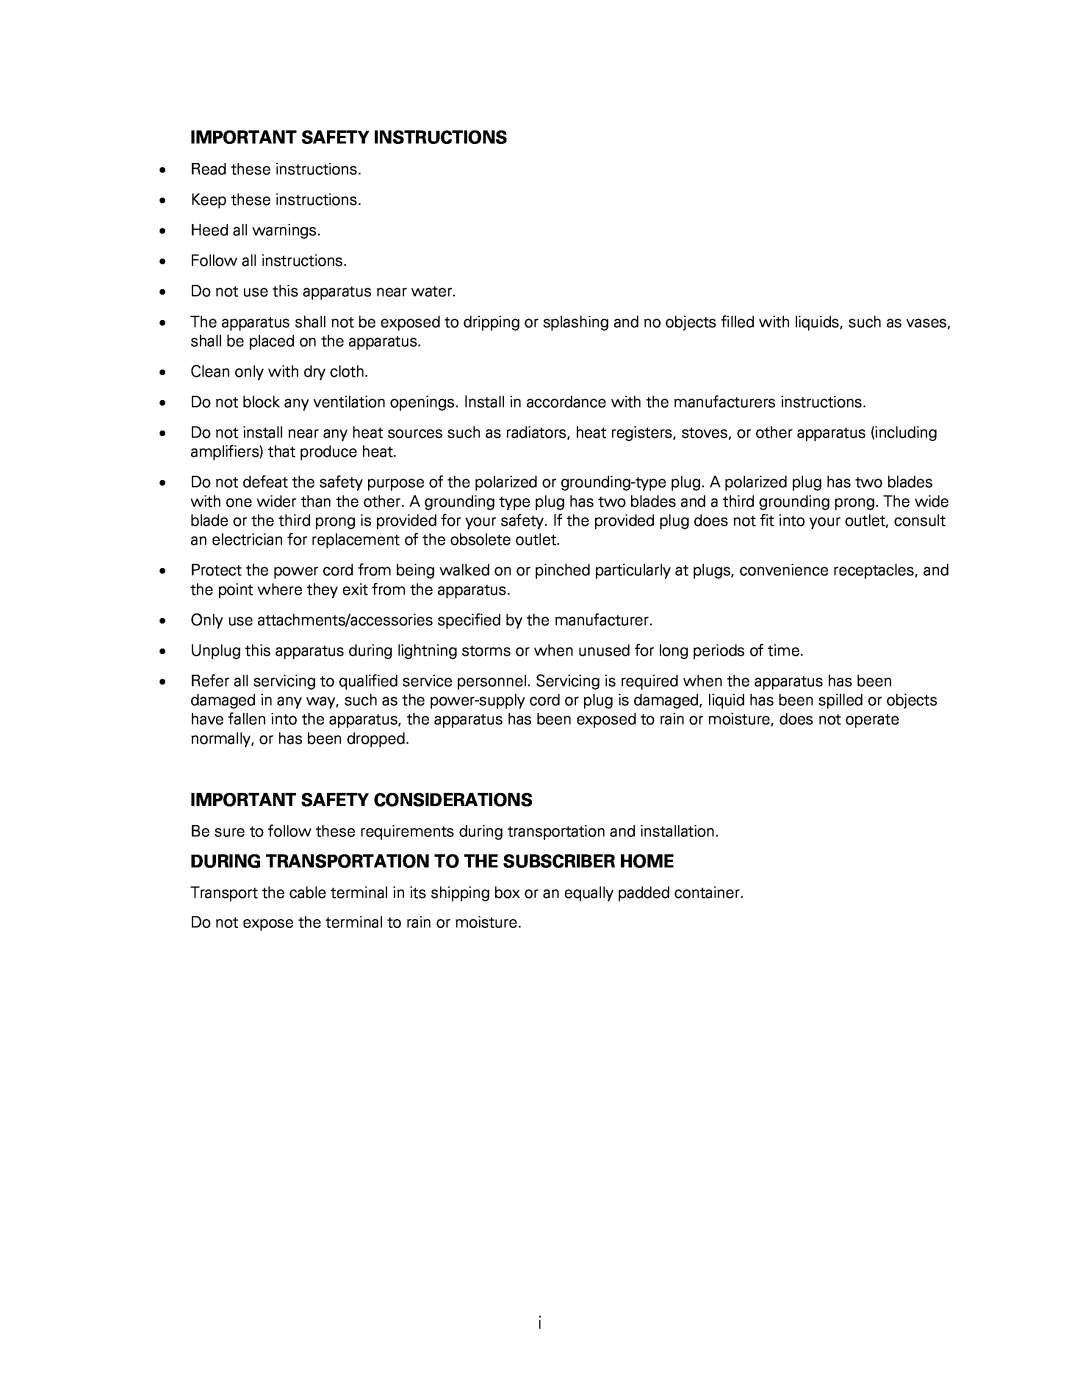 Motorola DCH3200 installation manual Important Safety Instructions, Important Safety Considerations 